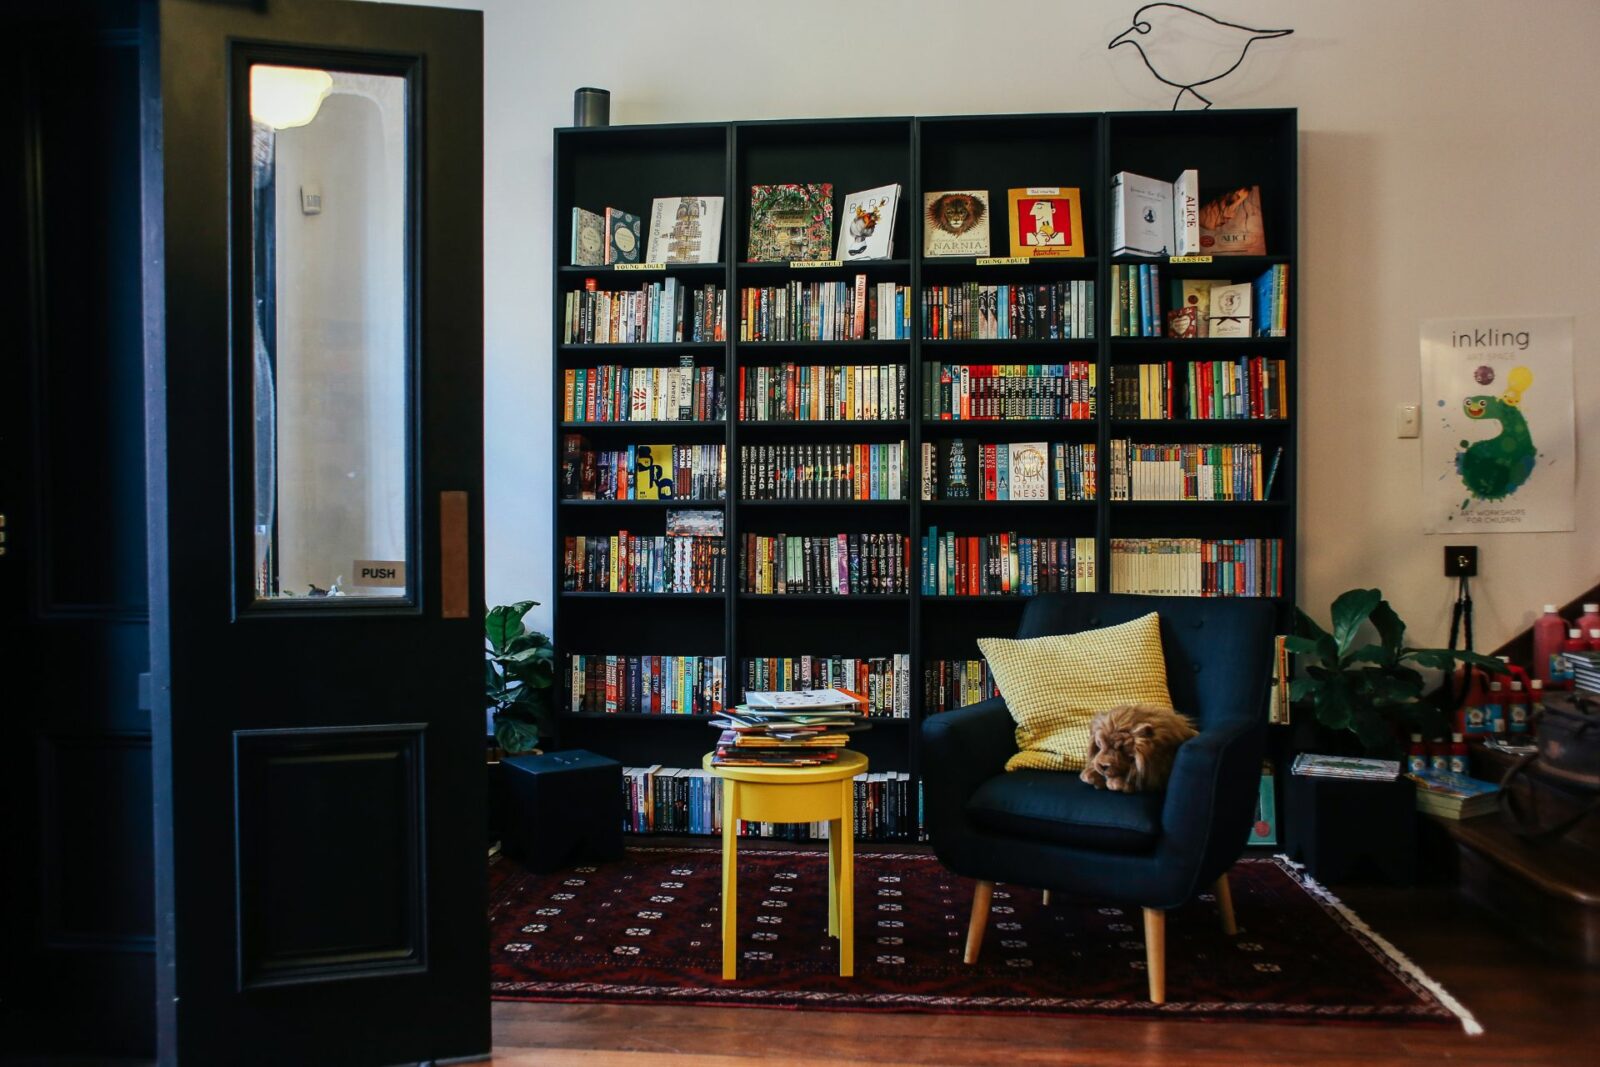 bookshelf cabinet